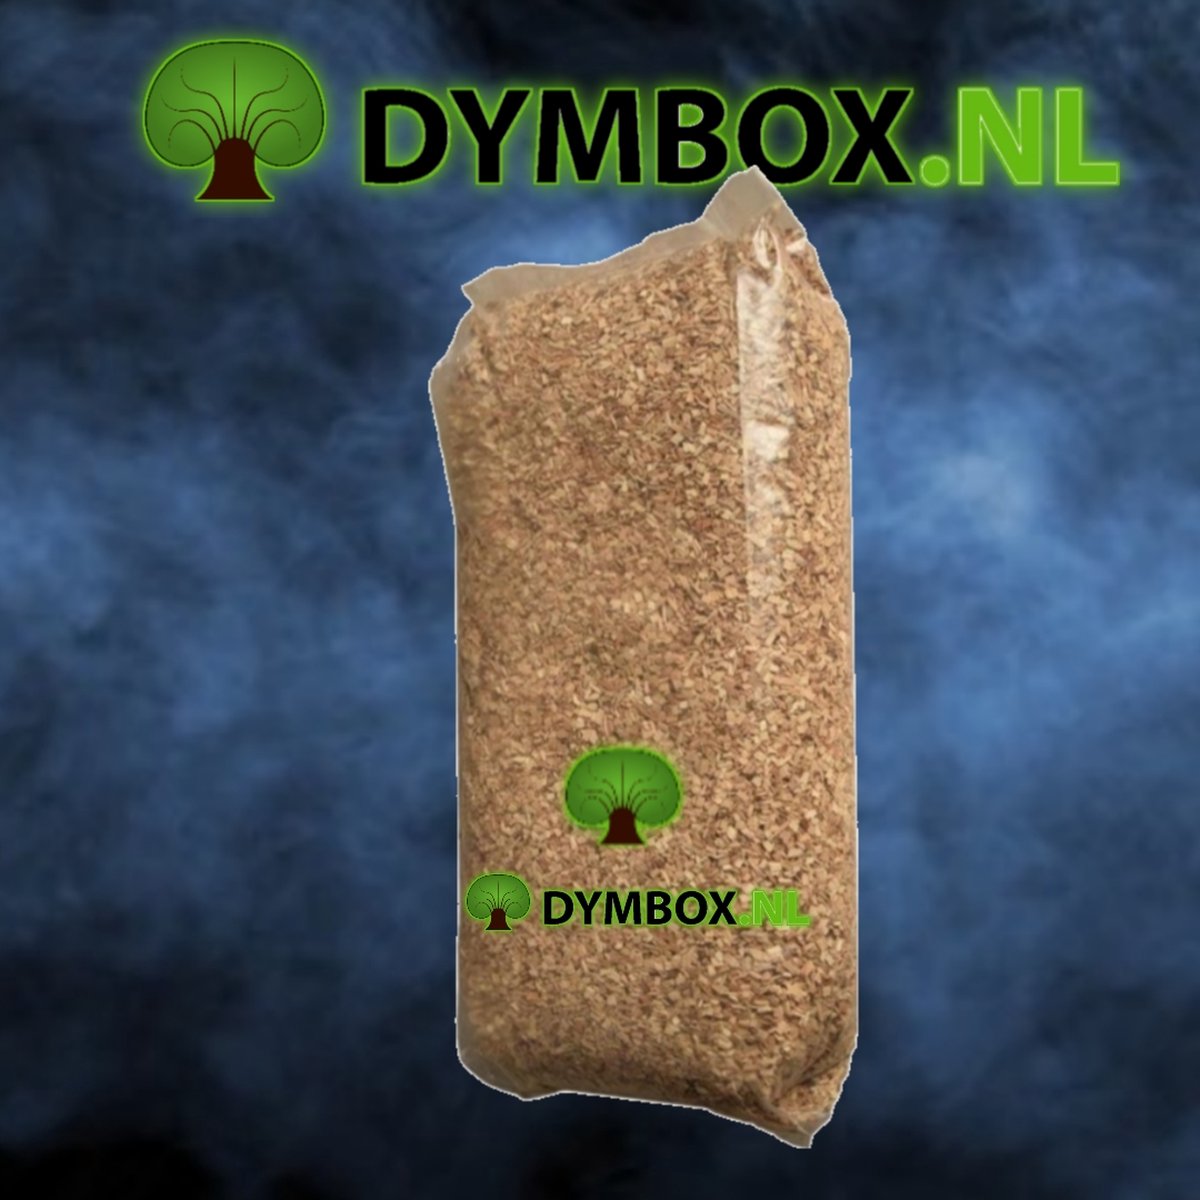 Rookhout Beuken Snippers circa 15kg/60 snippers circa 15kg/60 Liter (Speciaal geproduceerd voor het roken van levensmiddelen) - Dymbox